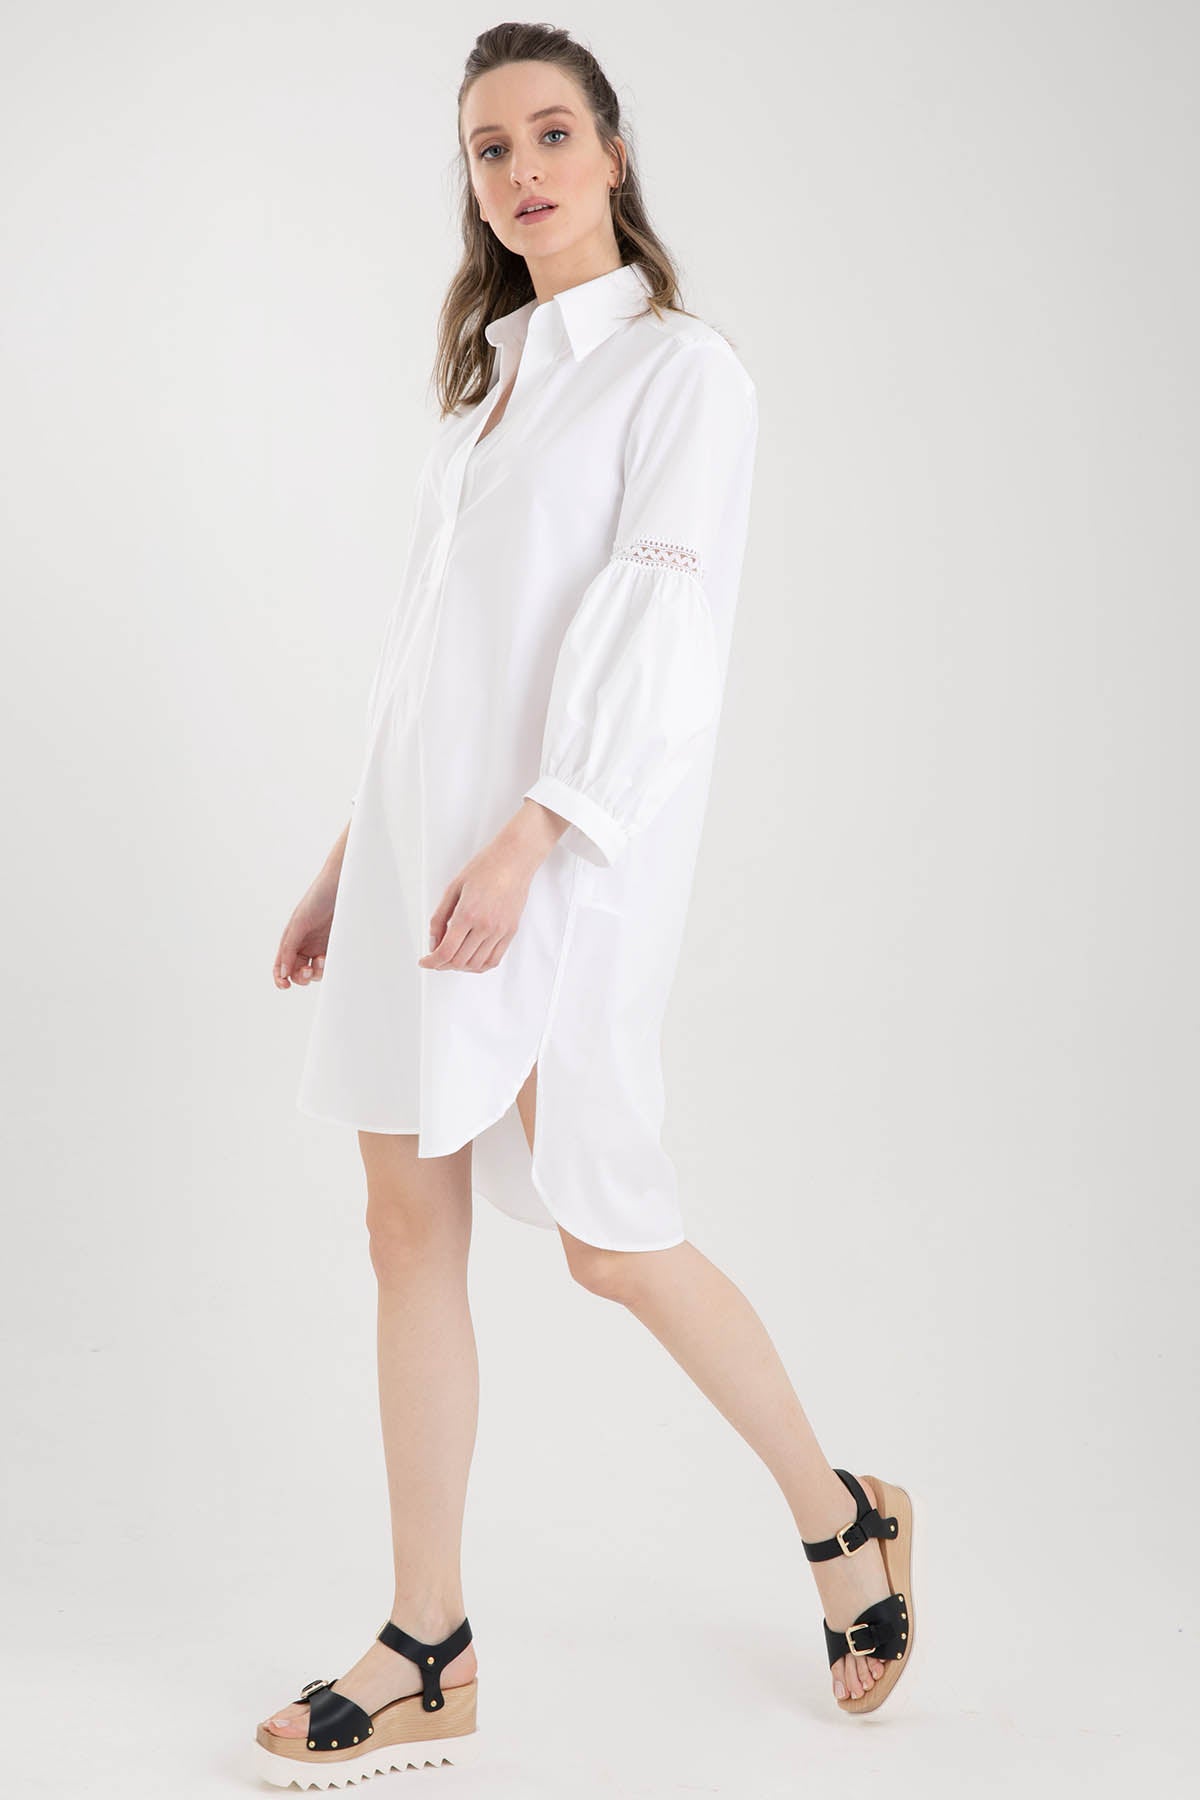 Dondup Balon Kol Gömlek Elbise-Libas Trendy Fashion Store